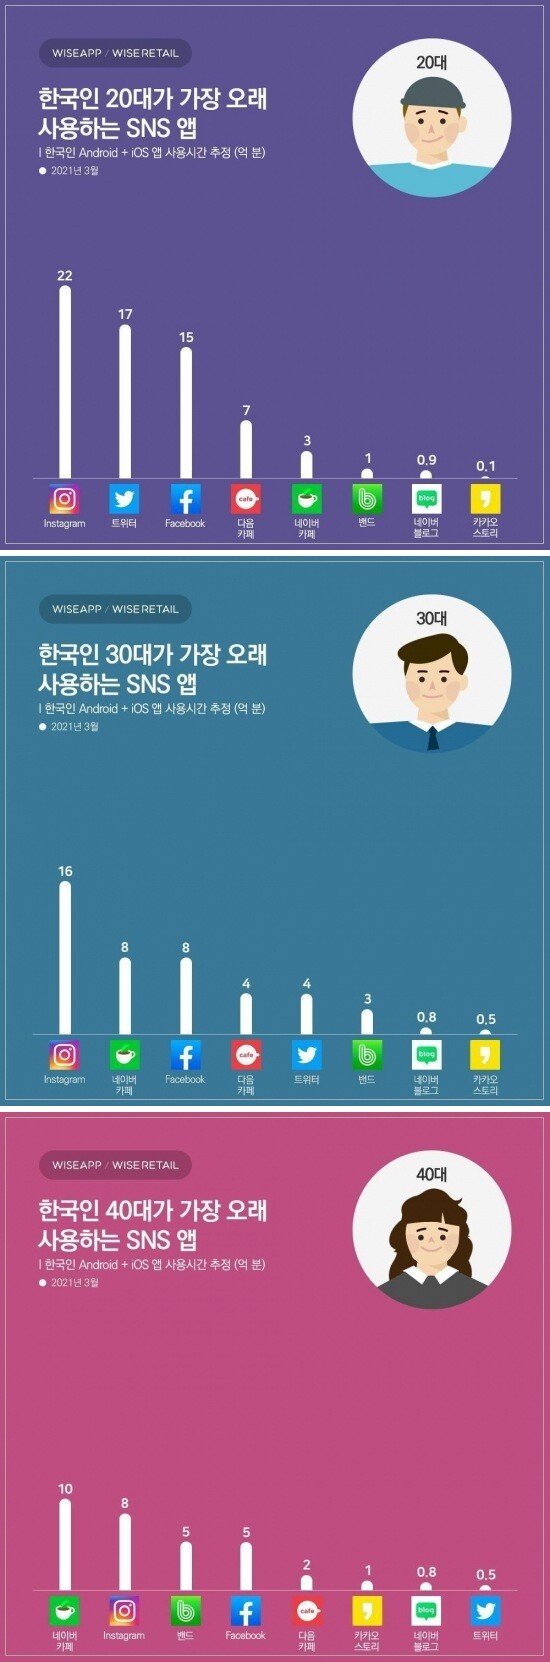 20-40 한국인이 가장 많이 쓰는 SNS